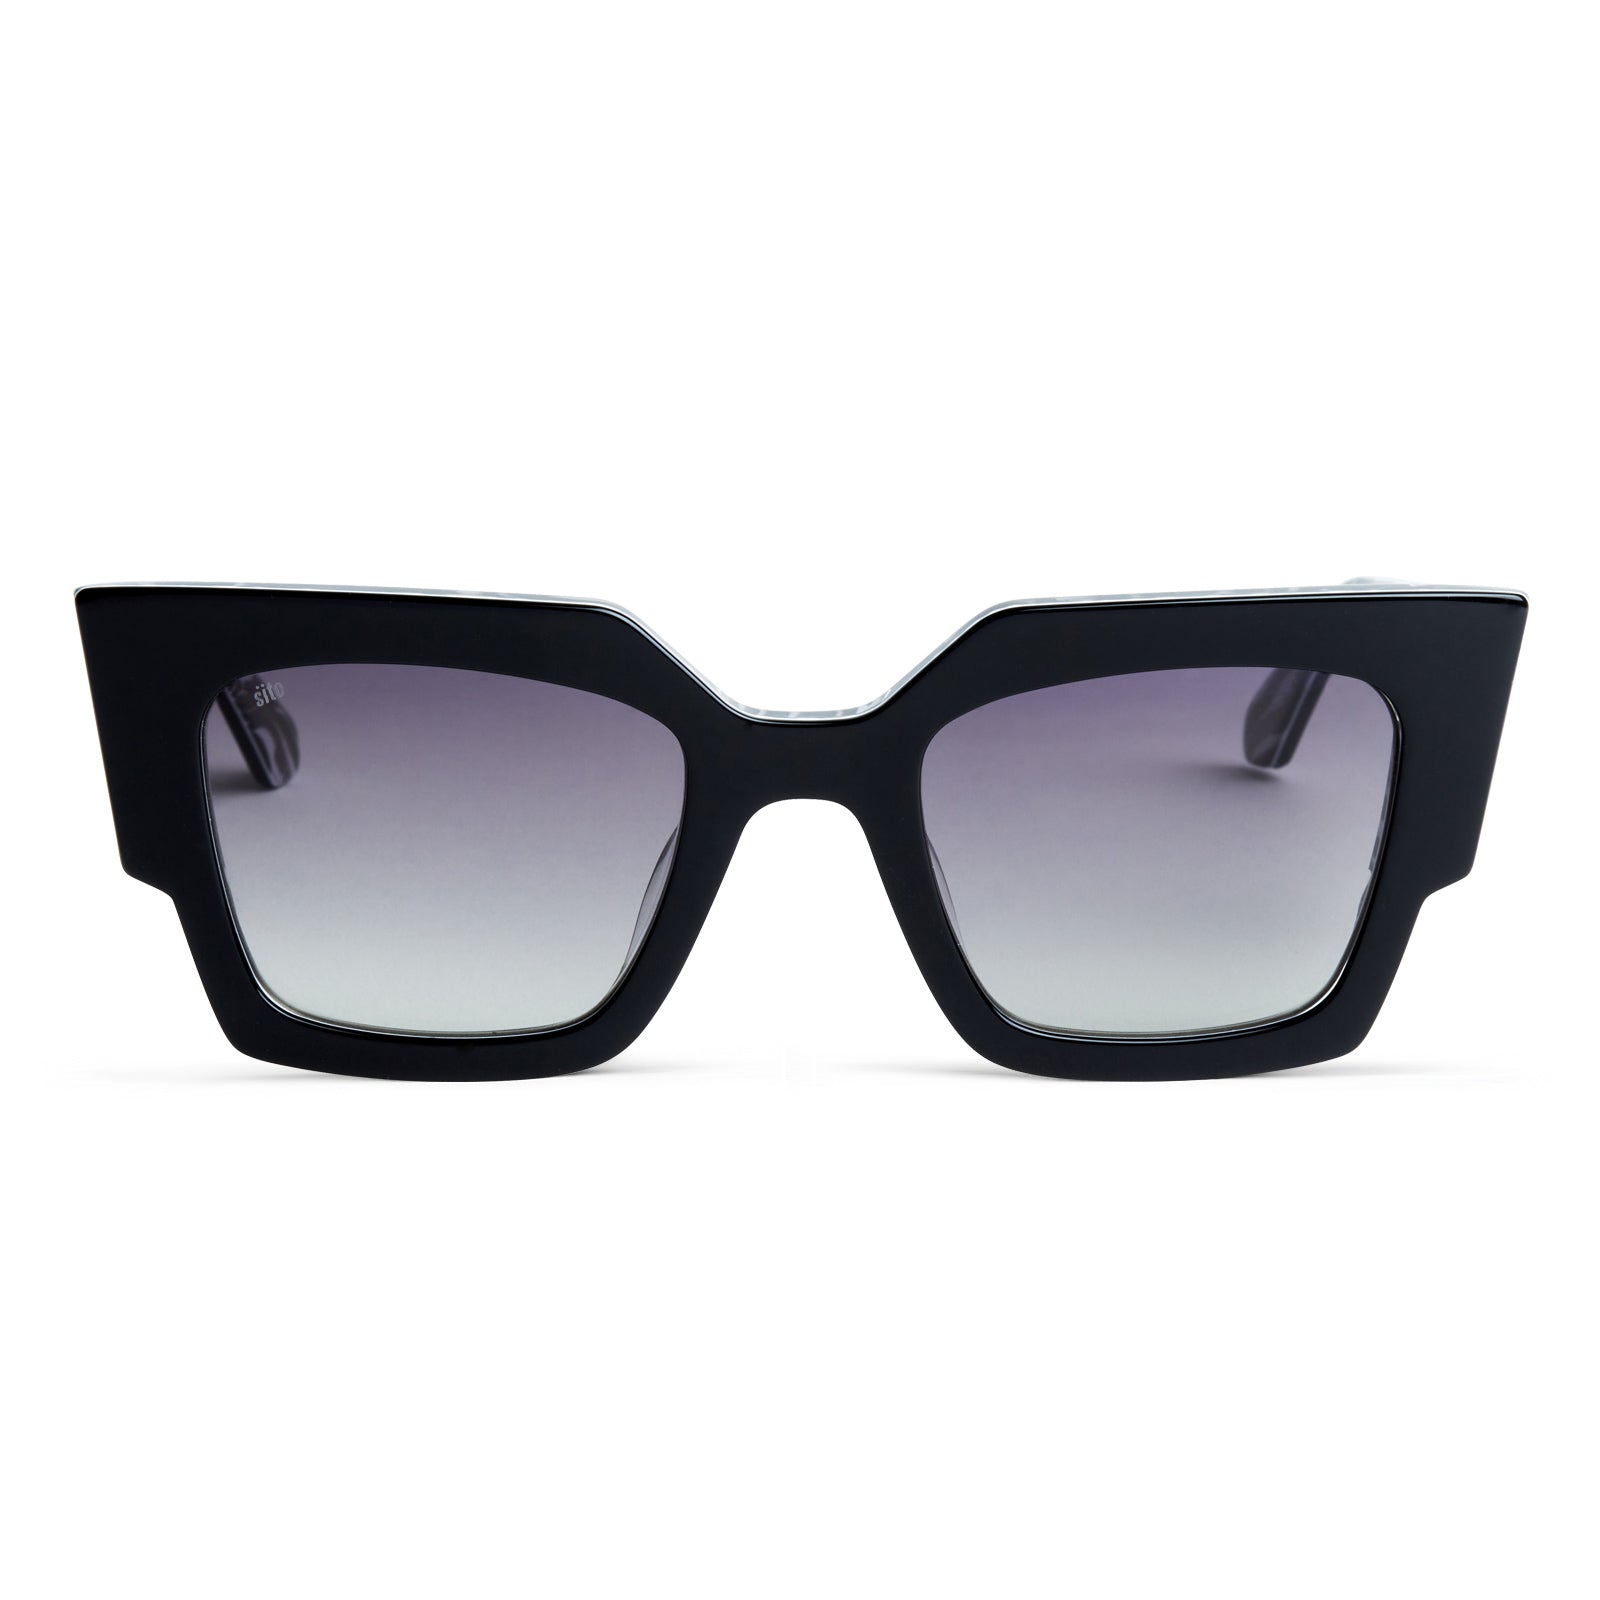 Sito Sensory Division Sunglasses